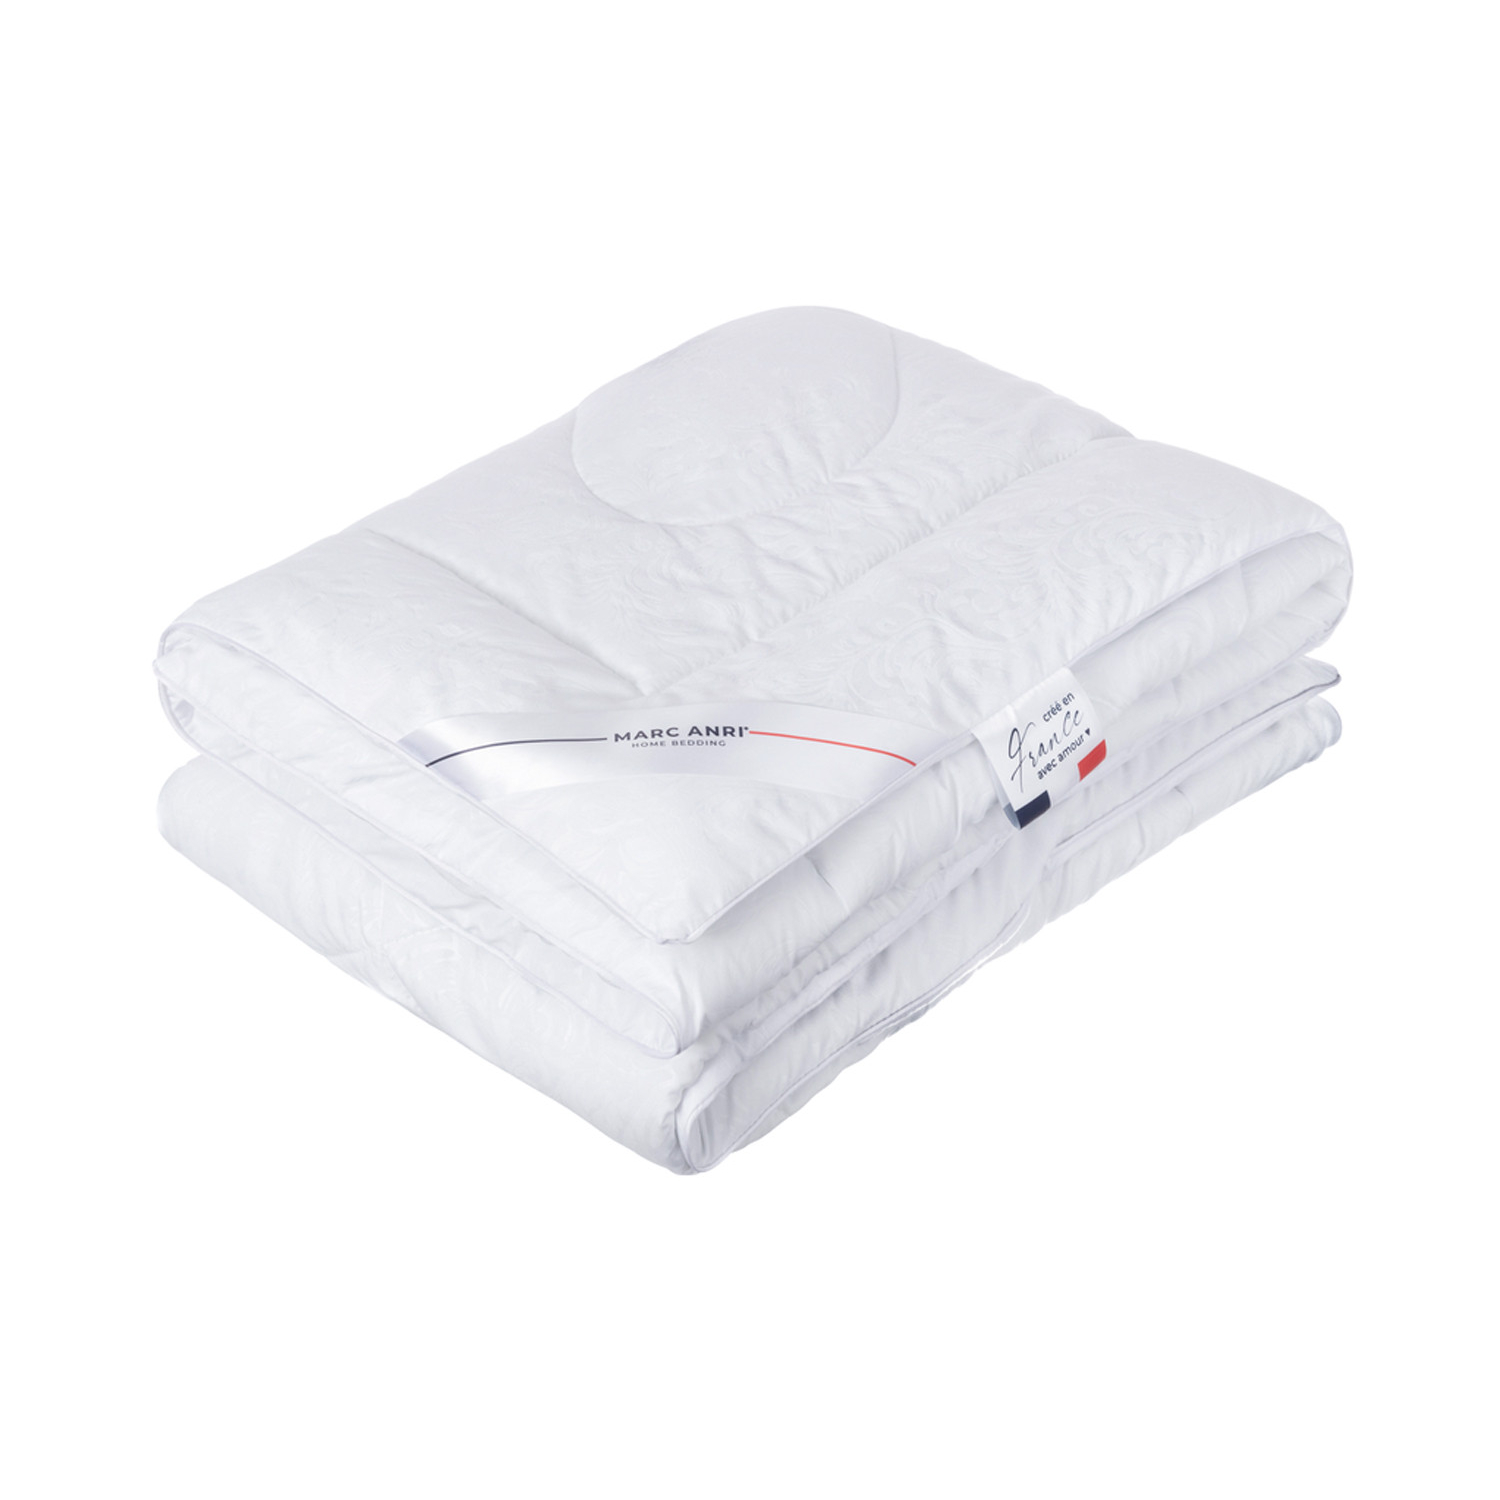 Одеяло Marc Anri Chinon белое 200х220 см (MA-MF) пуховое одеяло marc anri cannes бежевое 200х220 см мн2066